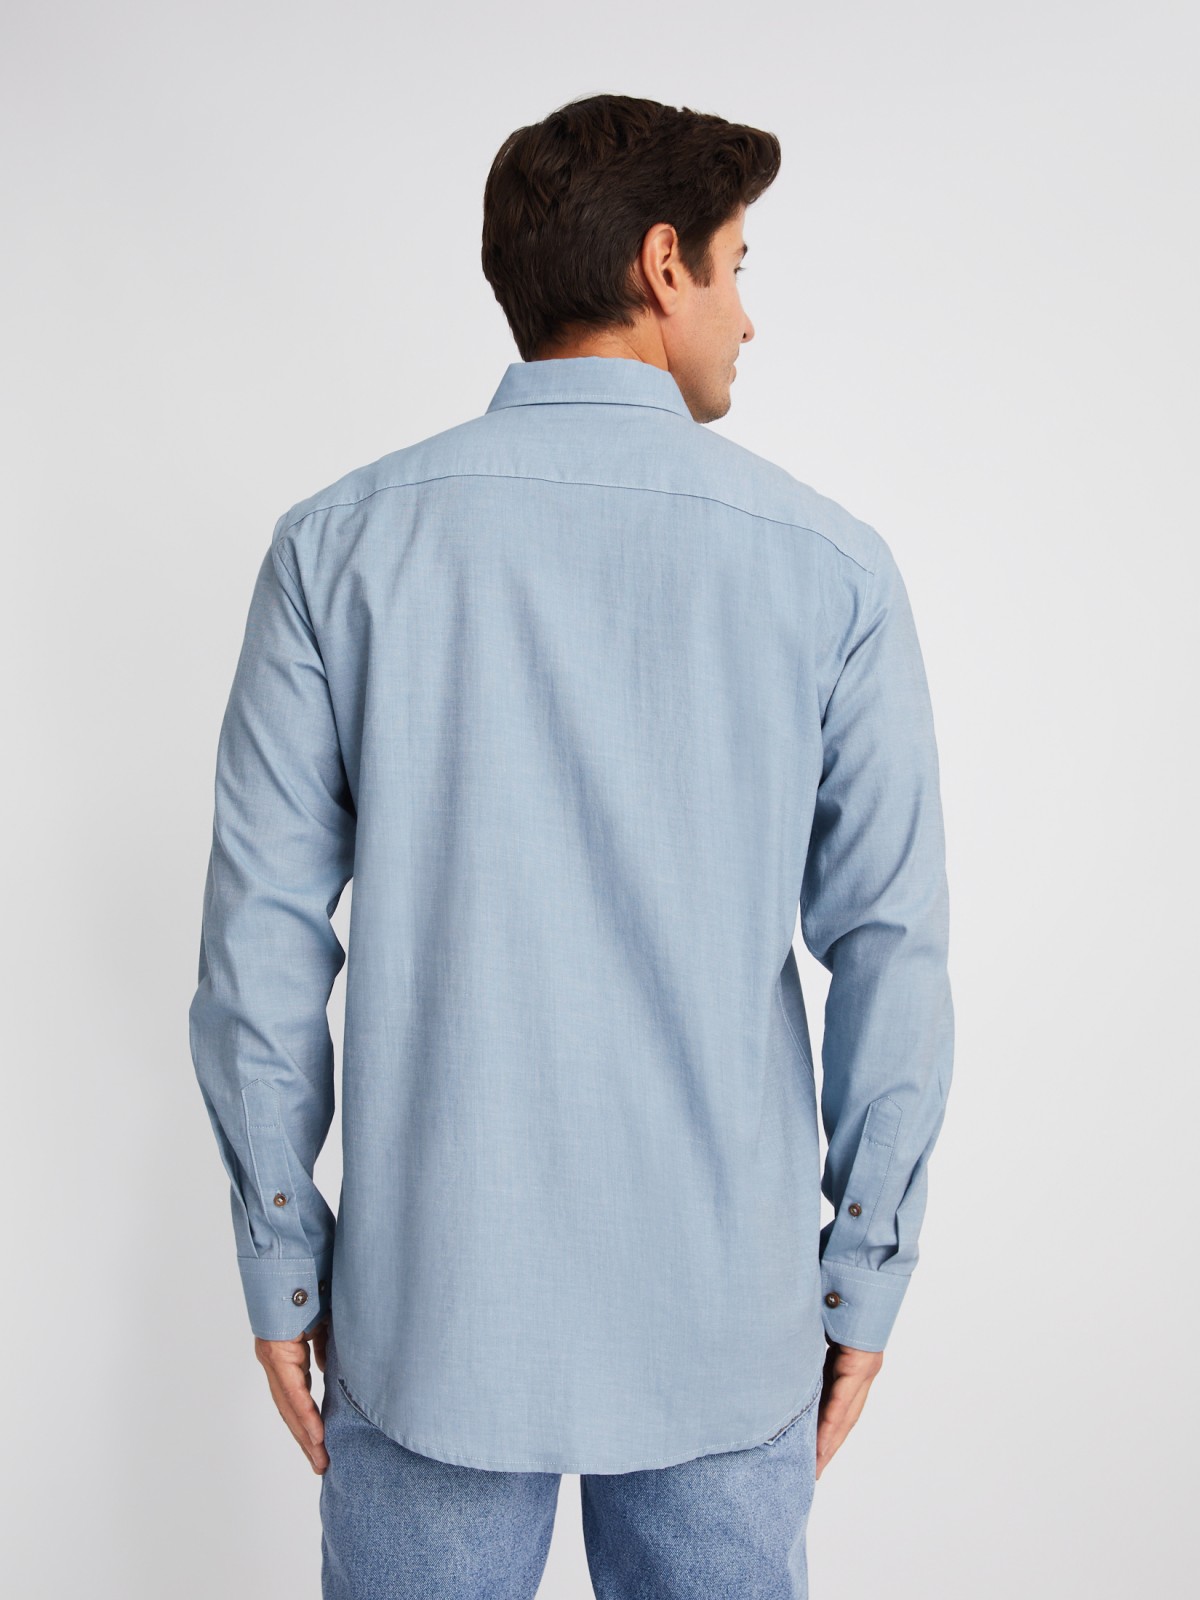 Рубашка из хлопка с длинным рукавом и карманами zolla 01413214R033, цвет светло-голубой, размер M - фото 5